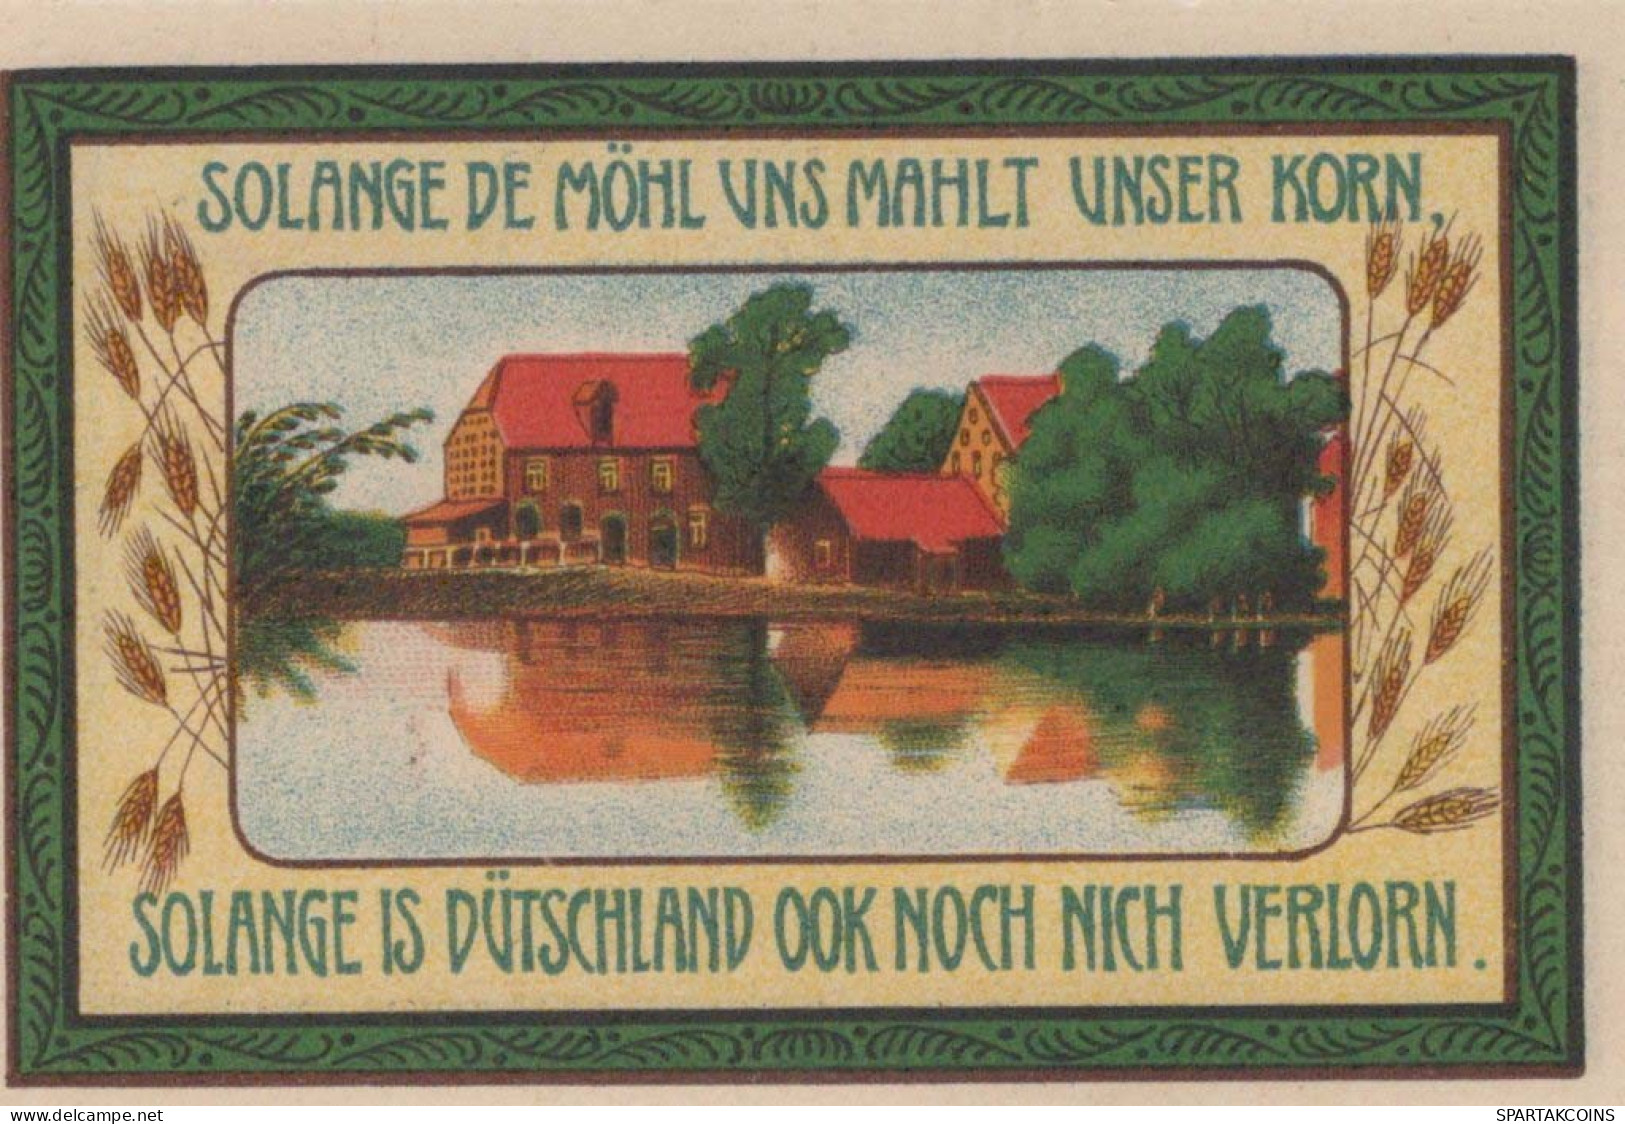 75 PFENNIG 1921 Stadt SIEDENBURG Hanover DEUTSCHLAND Notgeld Banknote #PG145 - Lokale Ausgaben